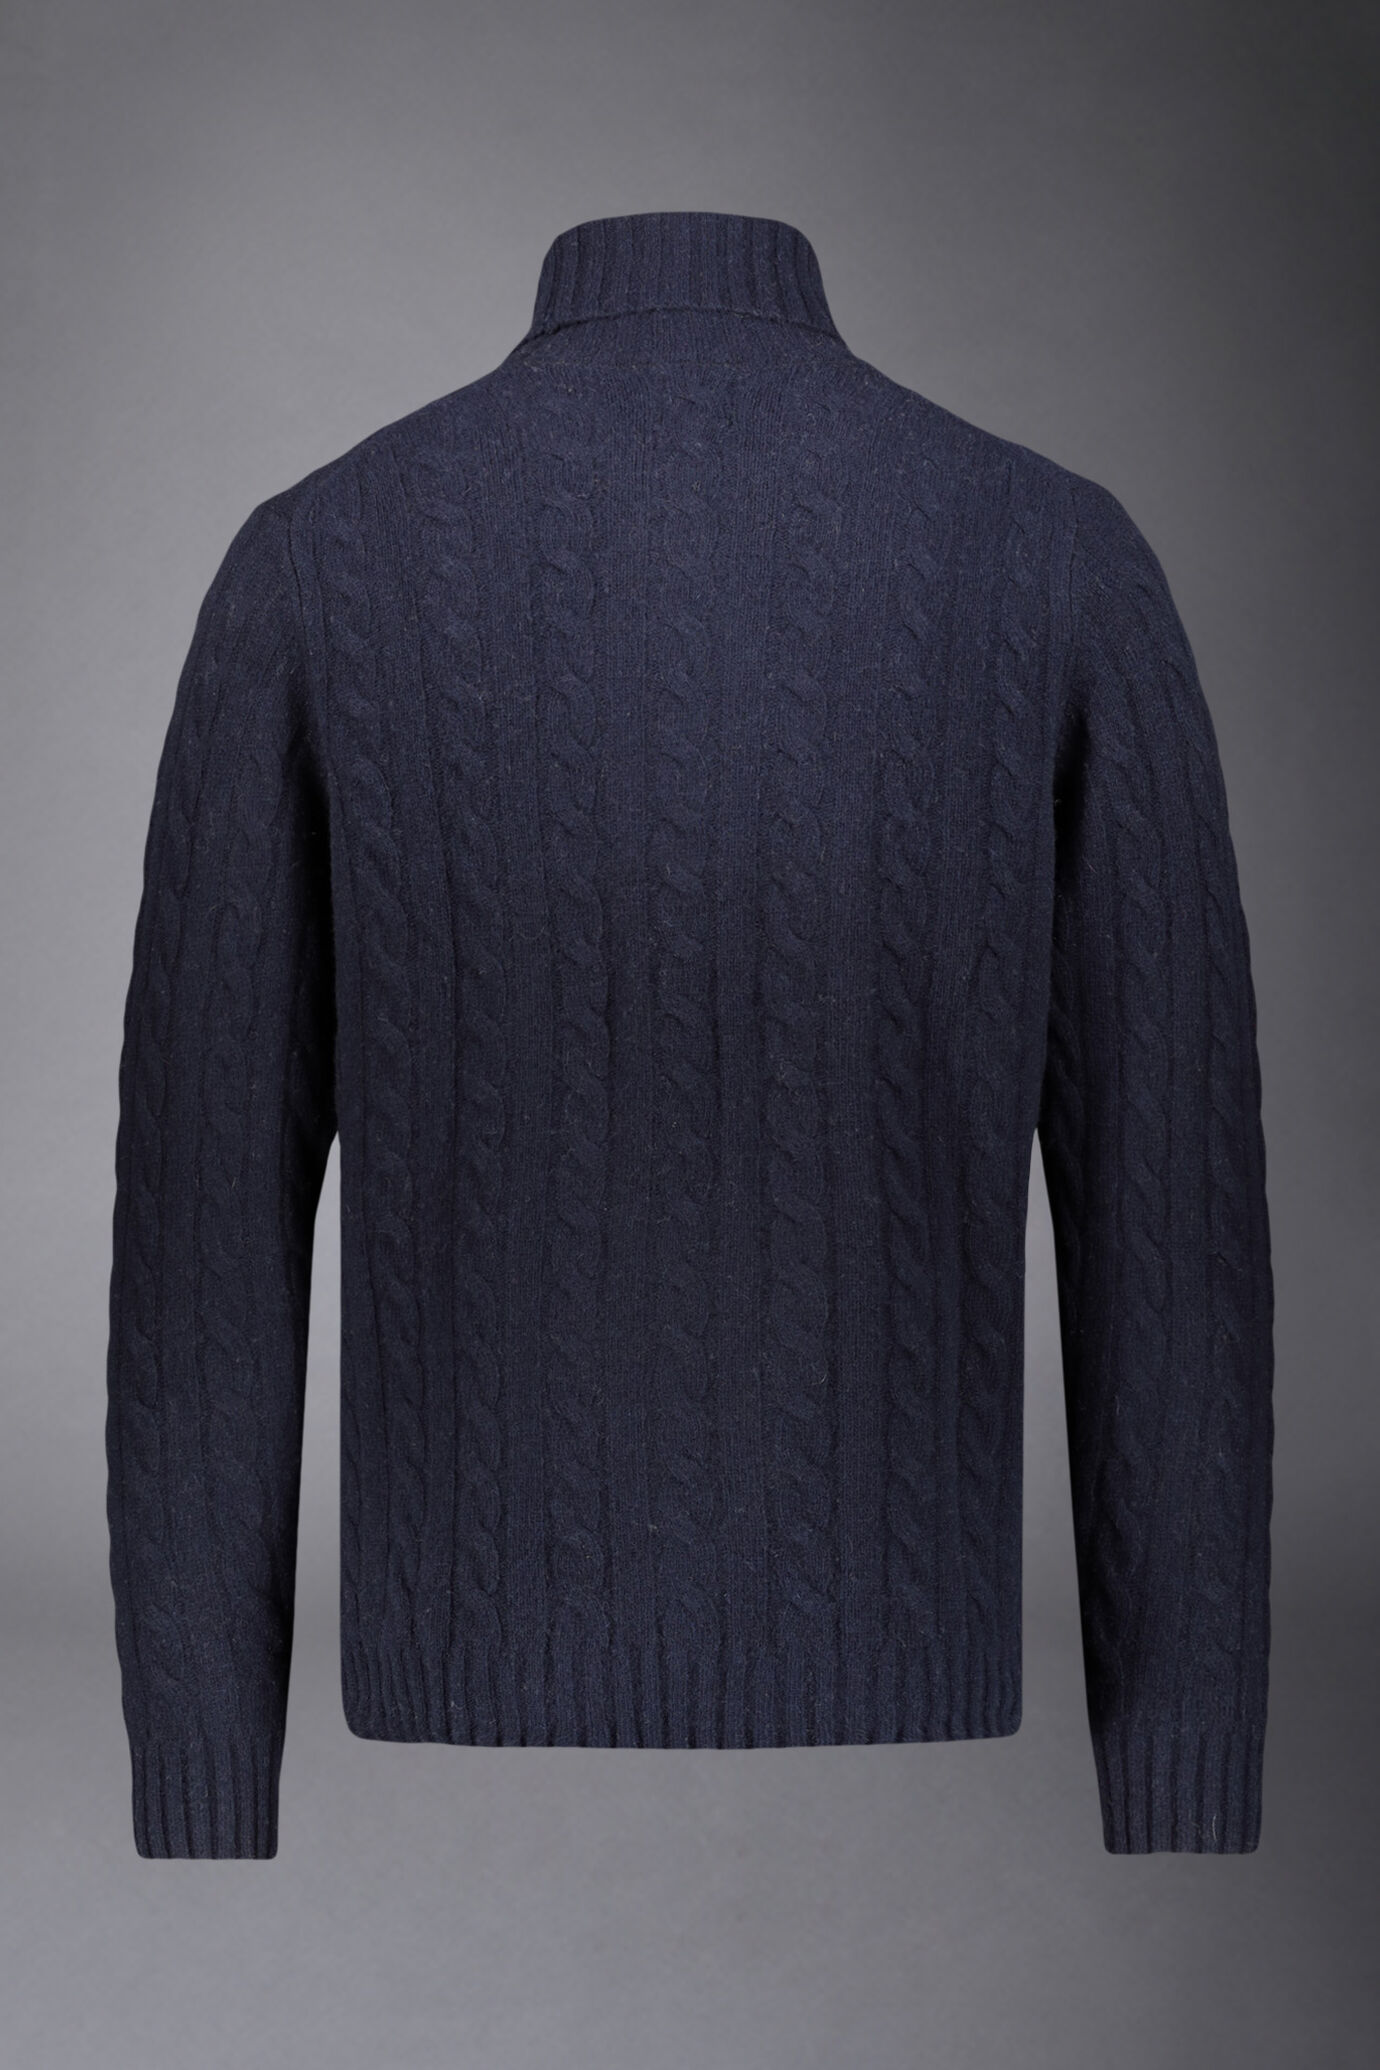 Maglia uomo a trecce collo alto in misto lana lambswool regular fit image number 4